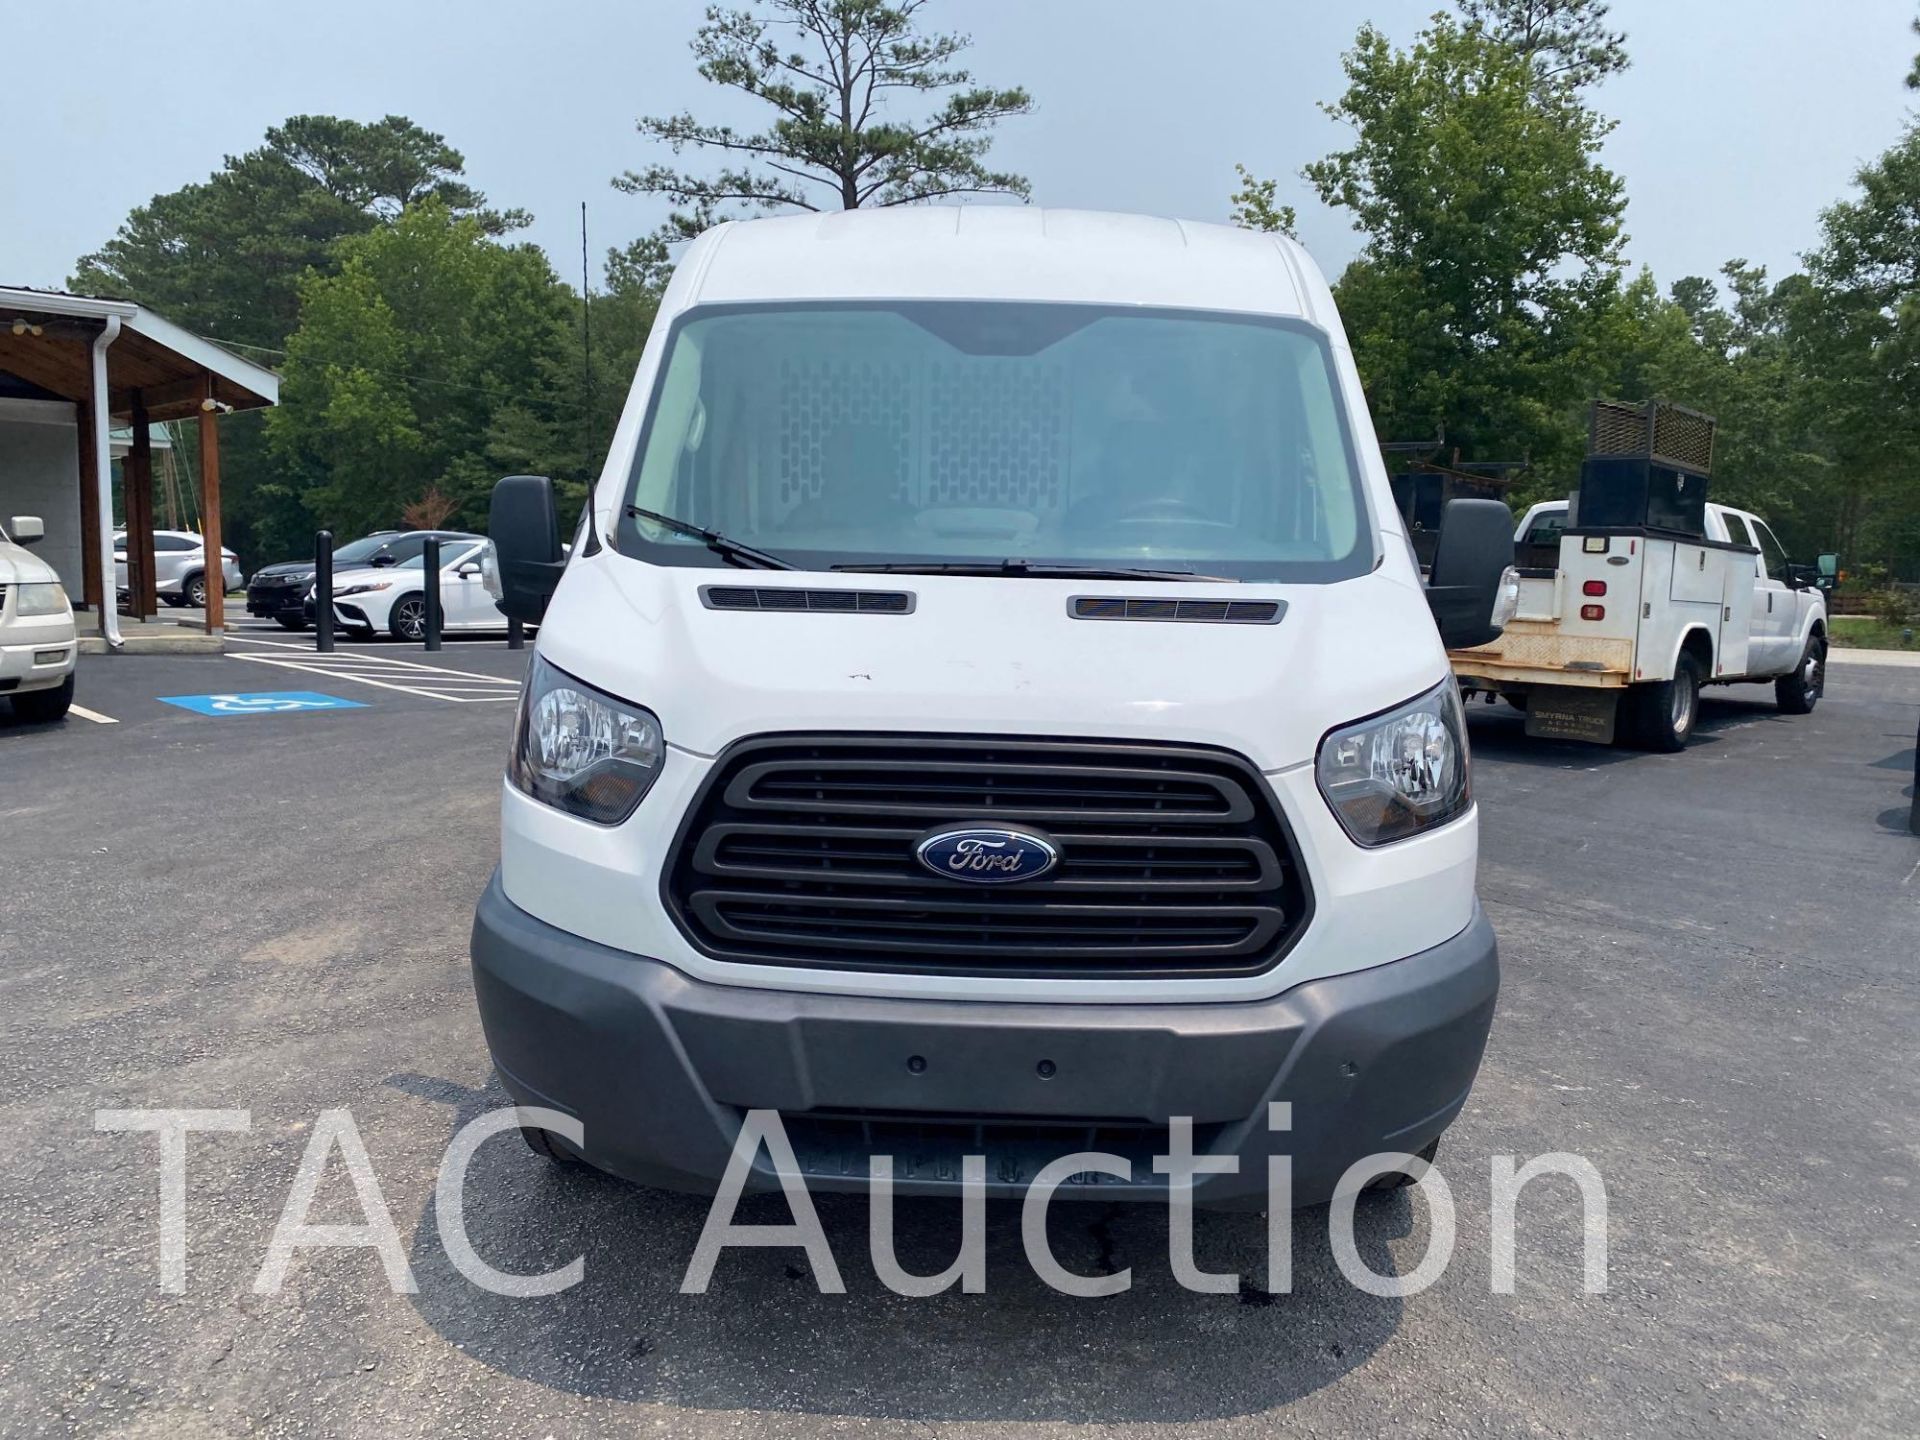 2018 Ford Transit 150 Cargo Van - Image 2 of 46